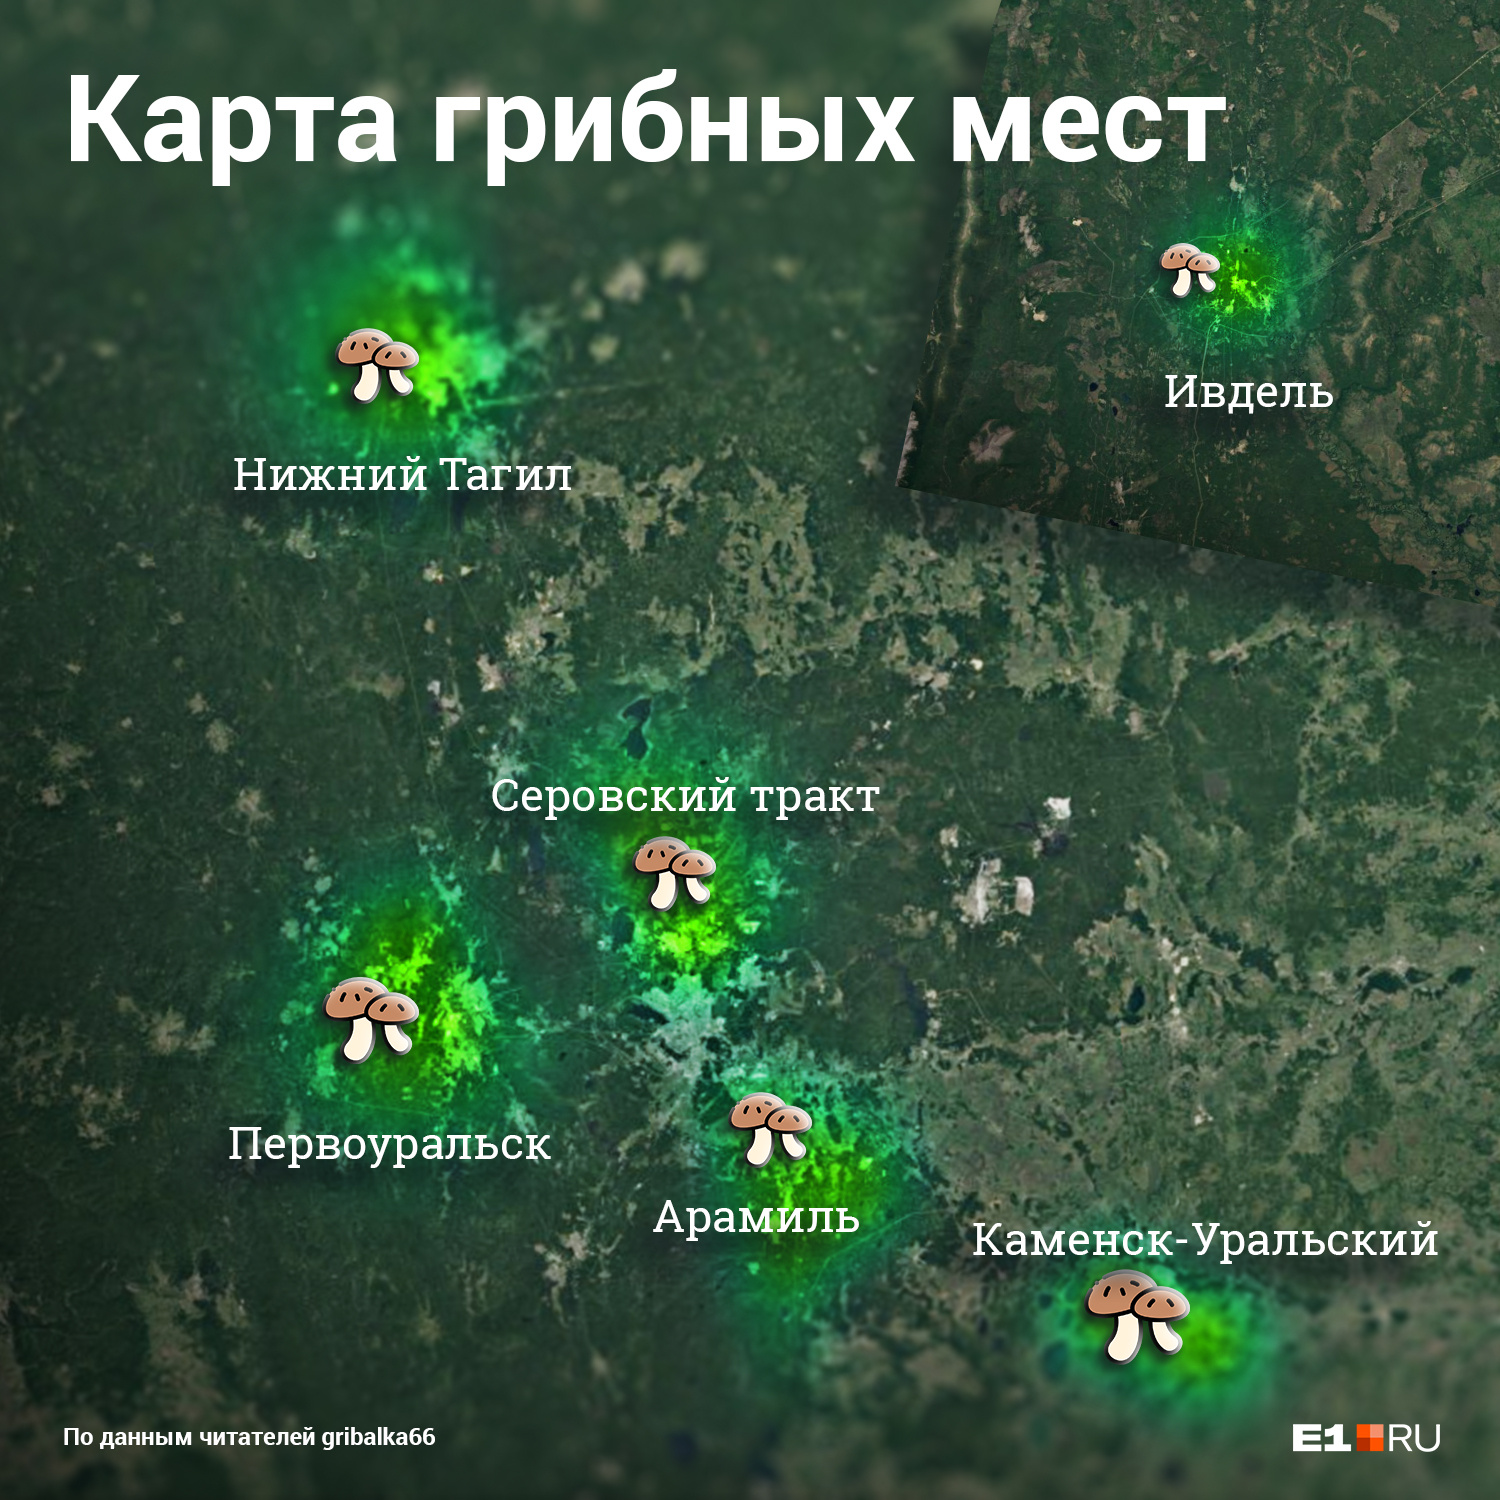 Так сейчас выглядит карта самых грибных мест Свердловской области